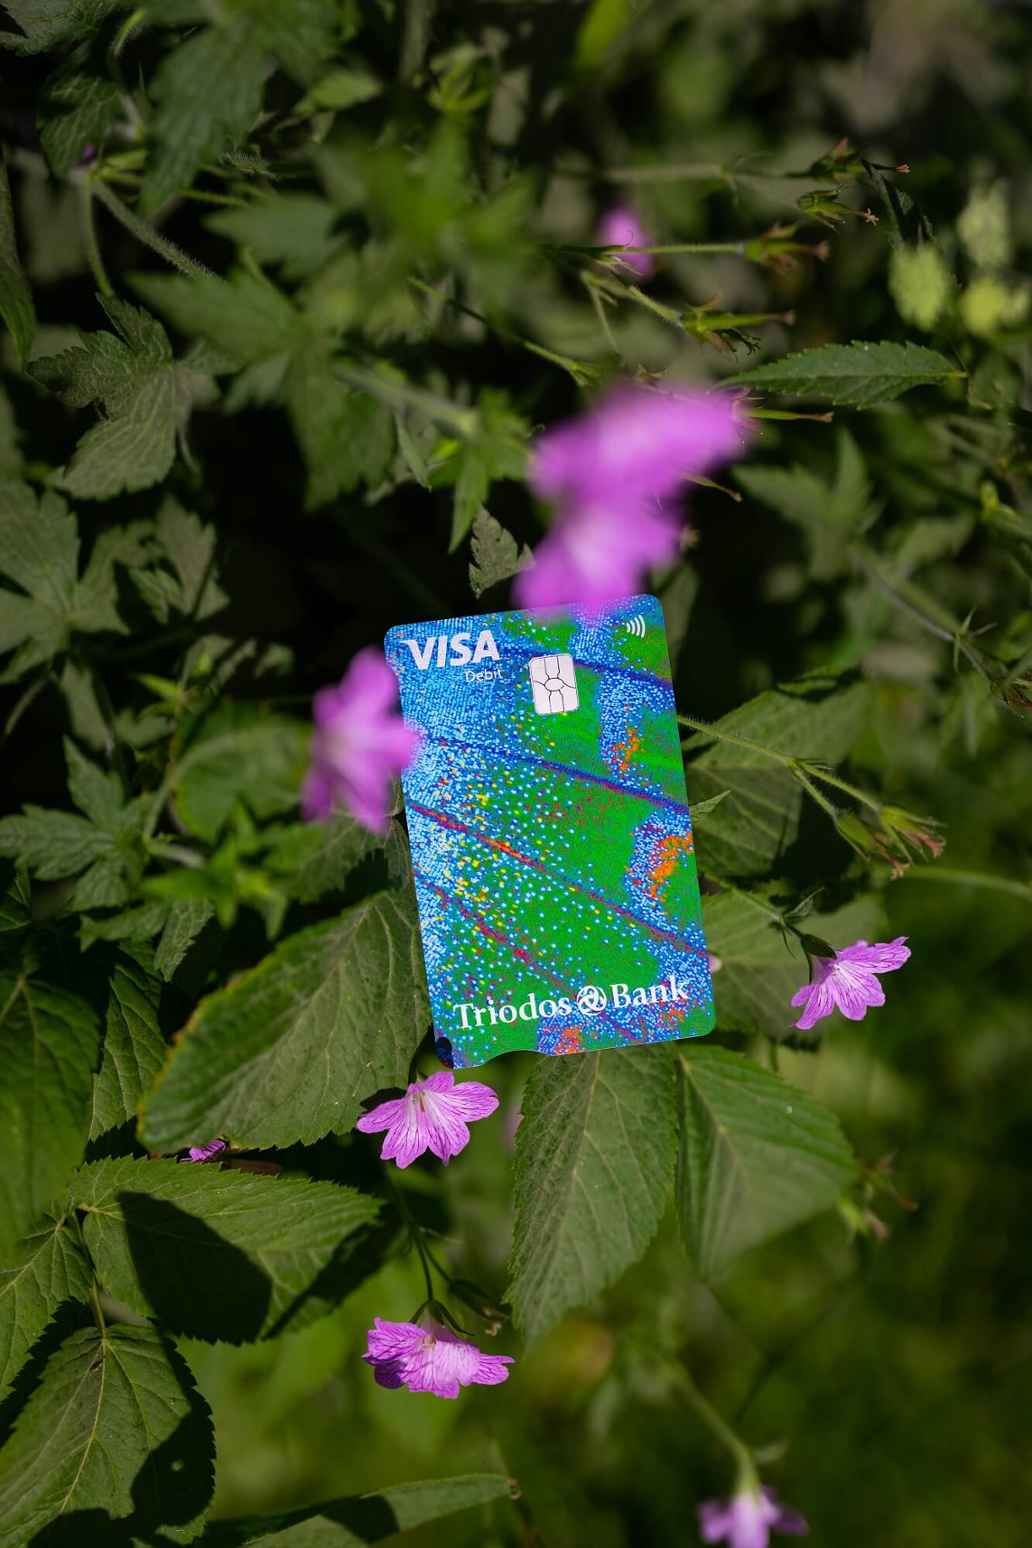 De nieuwe betaalpas van Triodos Bank tussen bladeren en bloemen